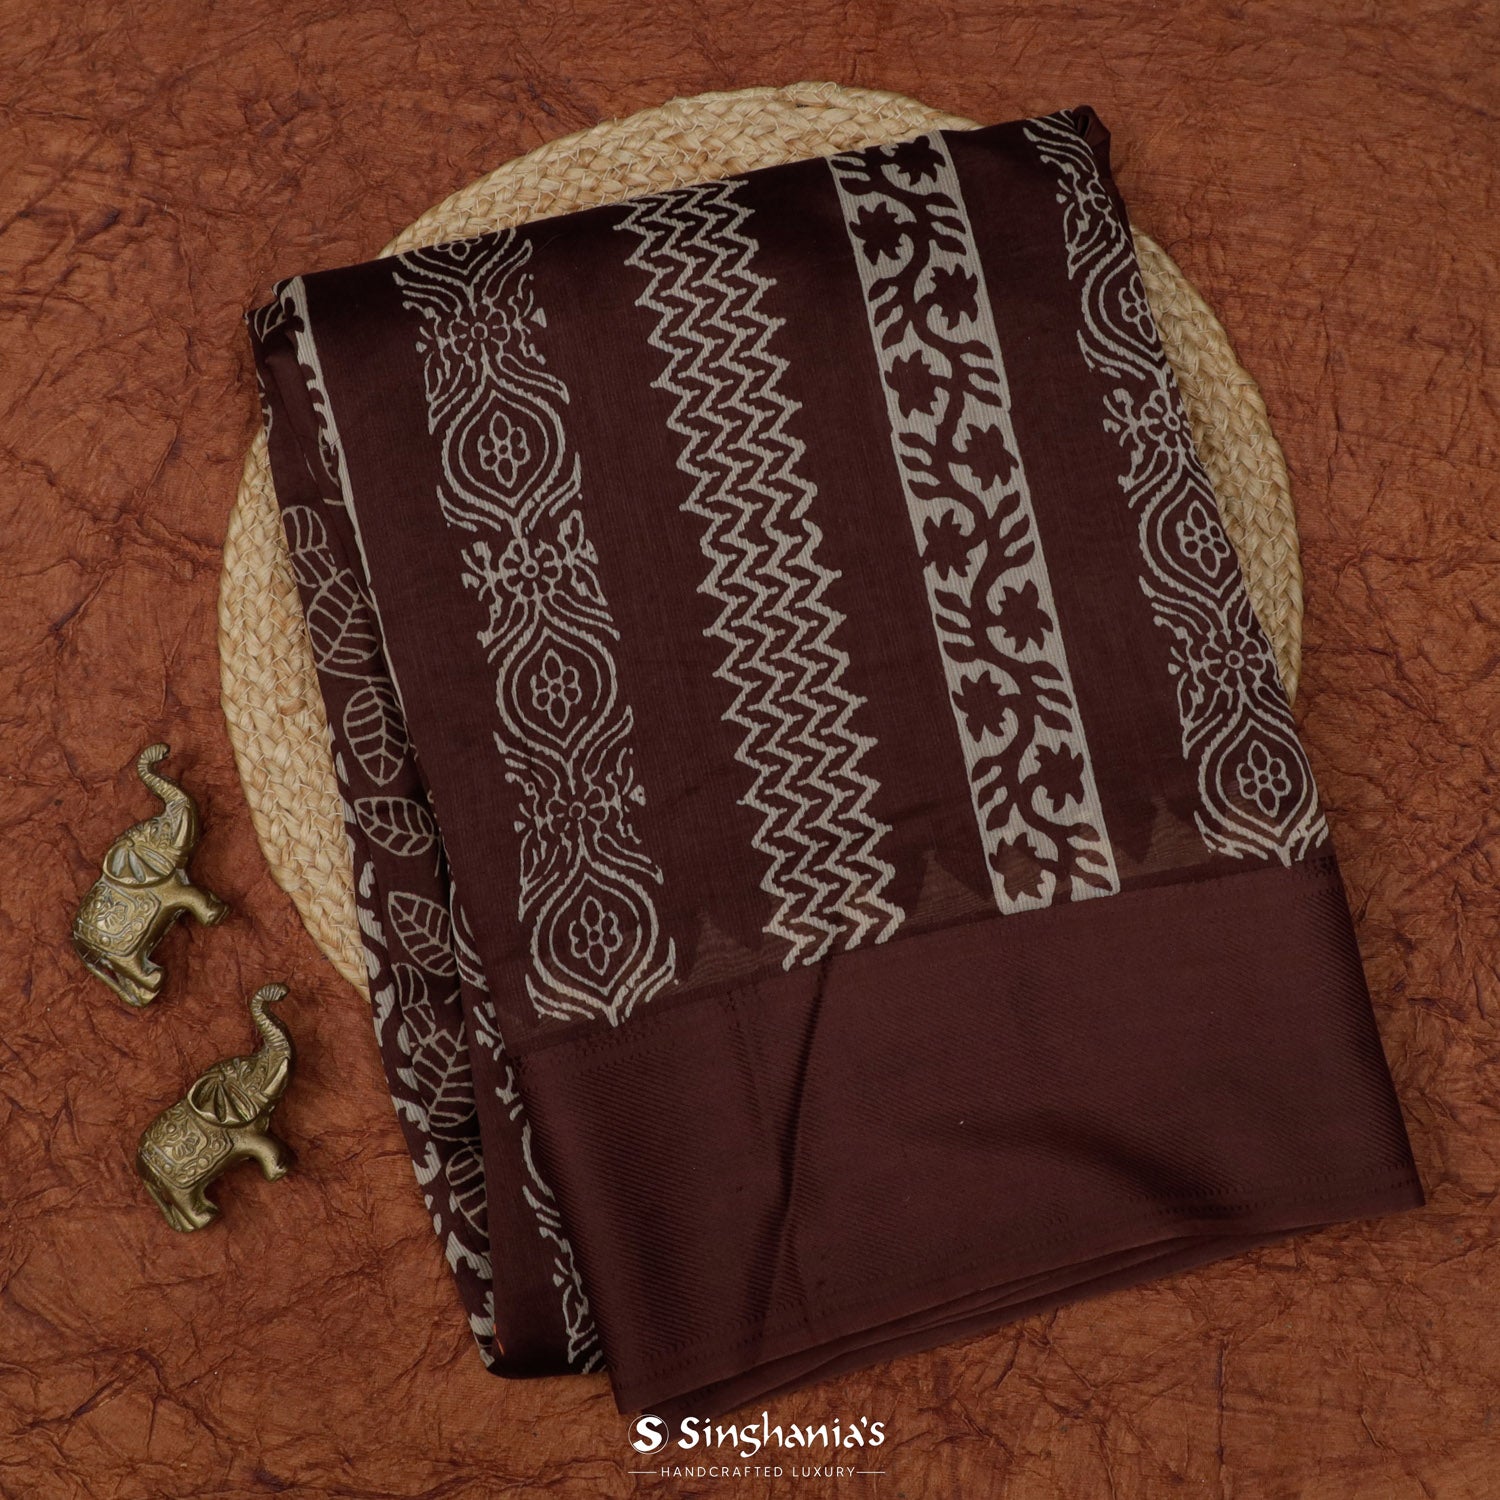 Dark Deep Brown Printed Chanderi Saree With Leaf Jaal Pattern